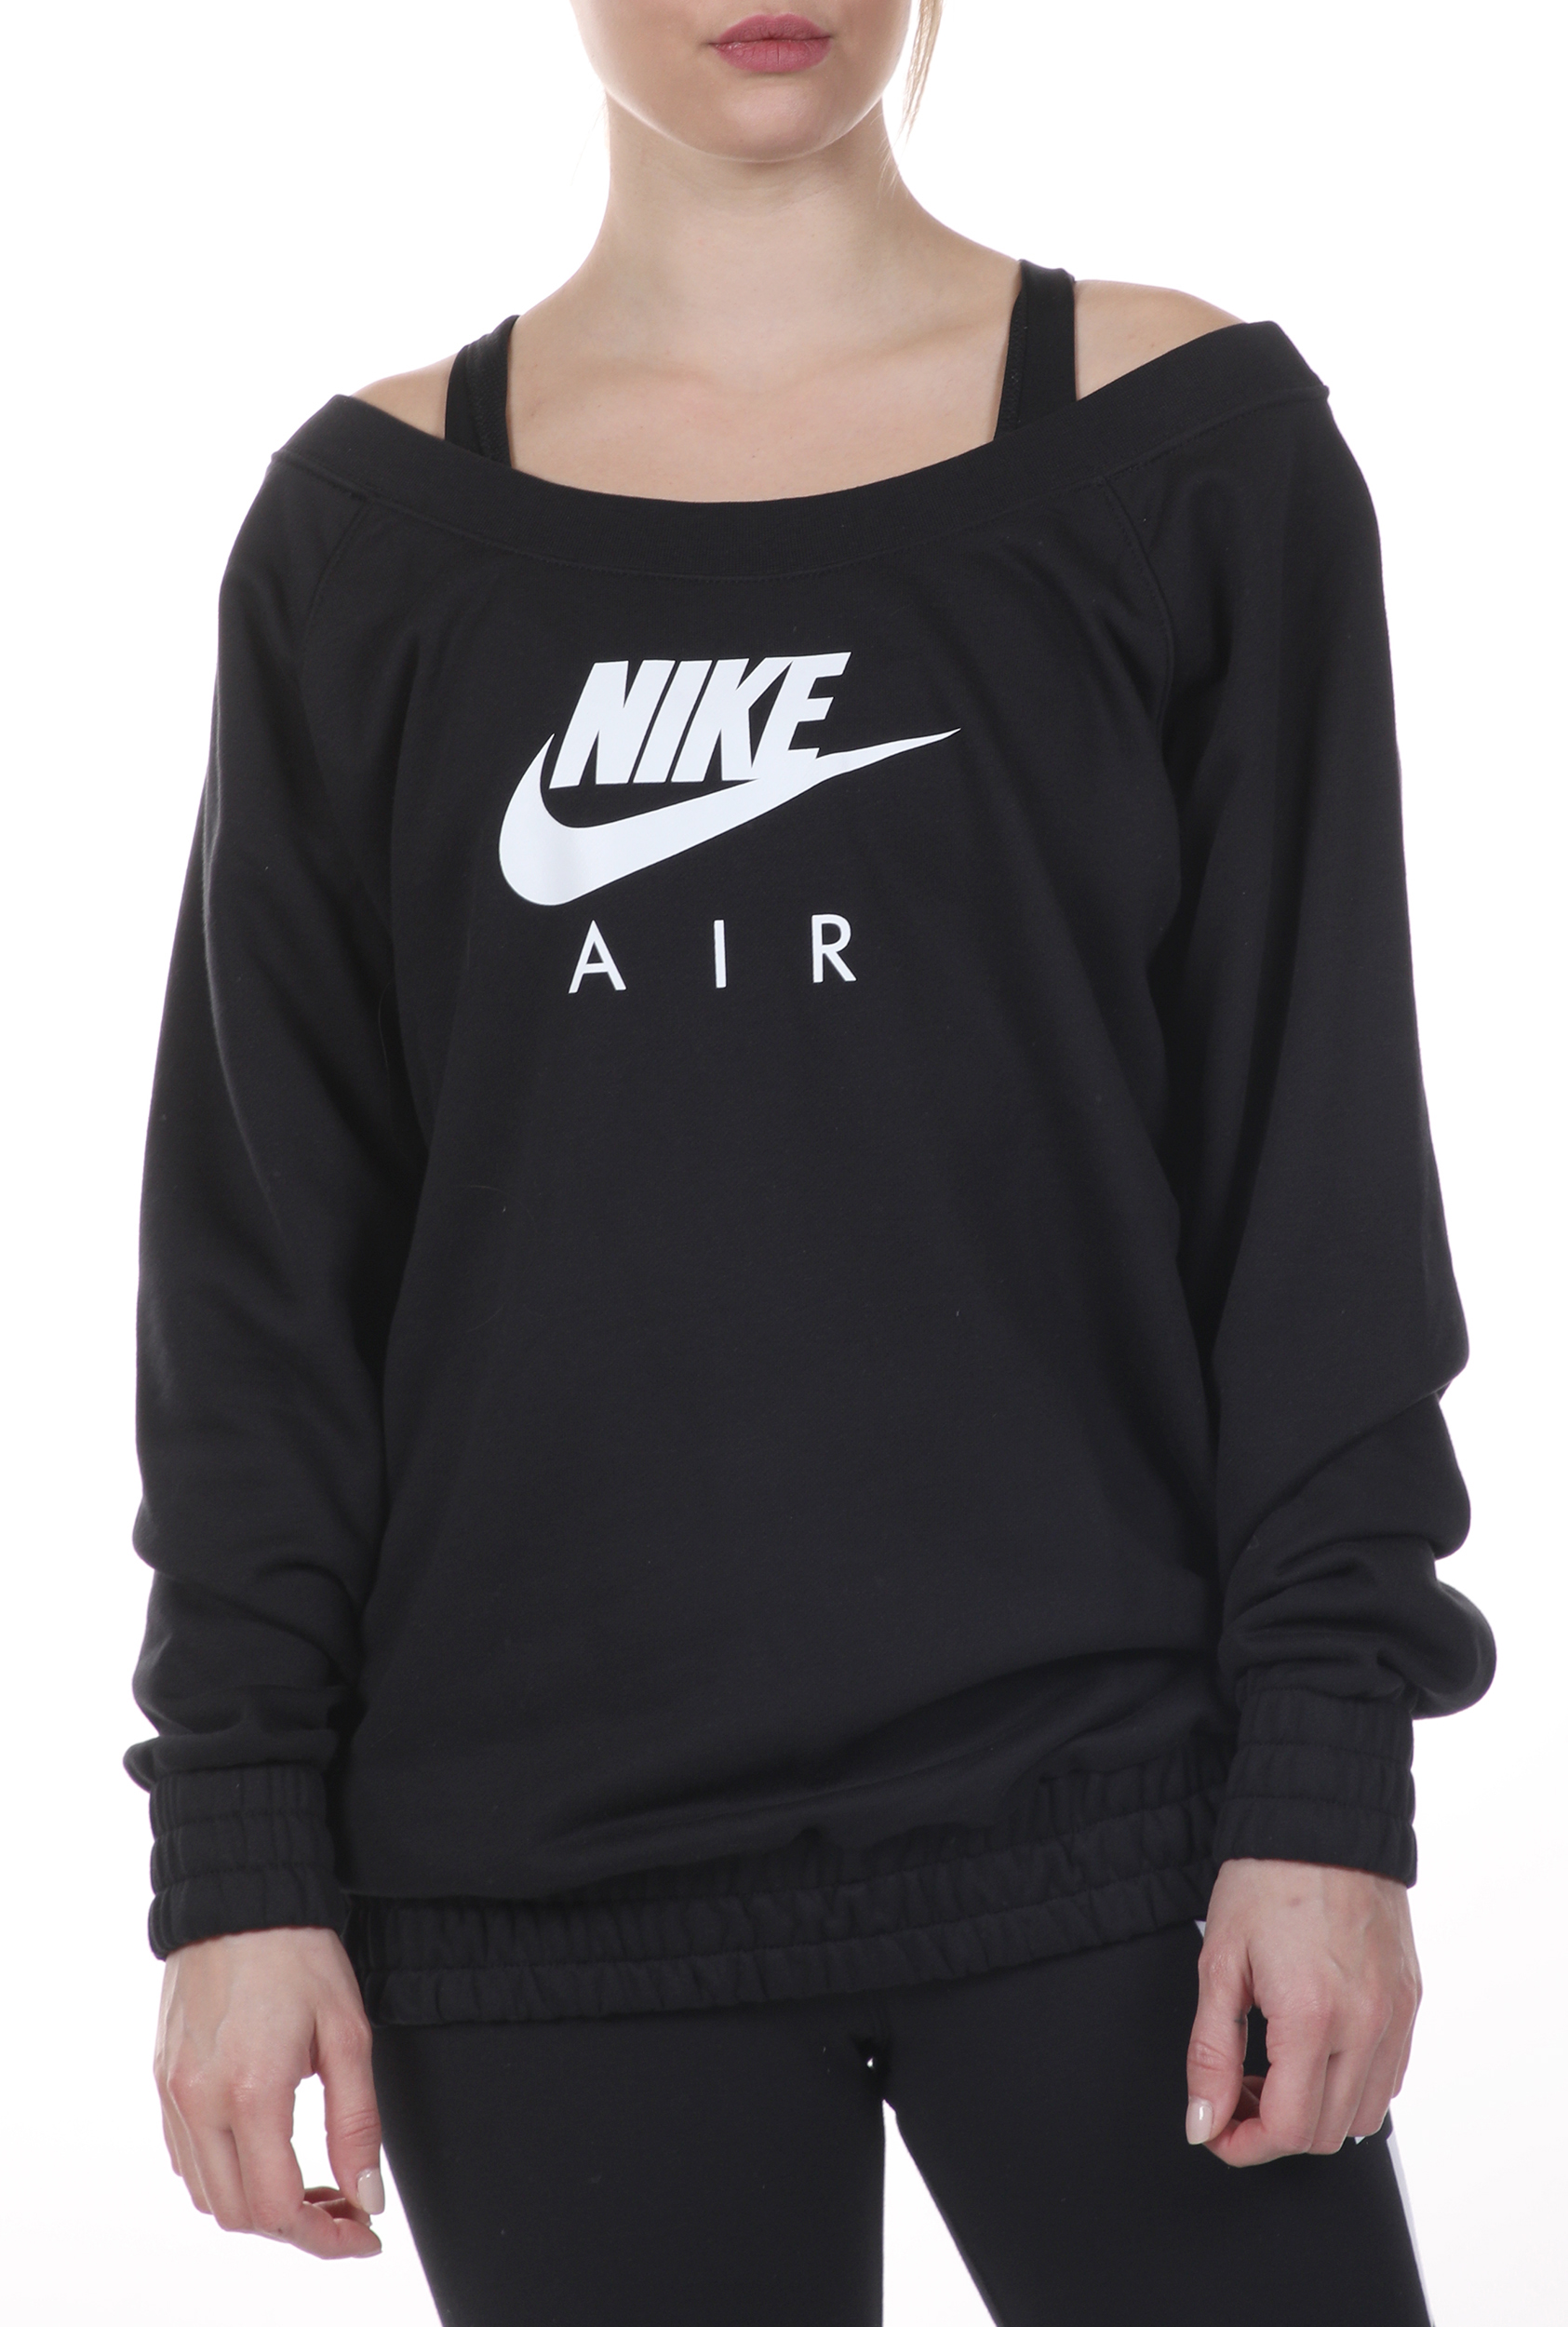 Γυναικεία/Ρούχα/Αθλητικά/Φούτερ-Μακρυμάνικα NIKE - Γυναικεία φούτερ μπλούζα NIKE NSW AIR CREW OS FLC μαύρη